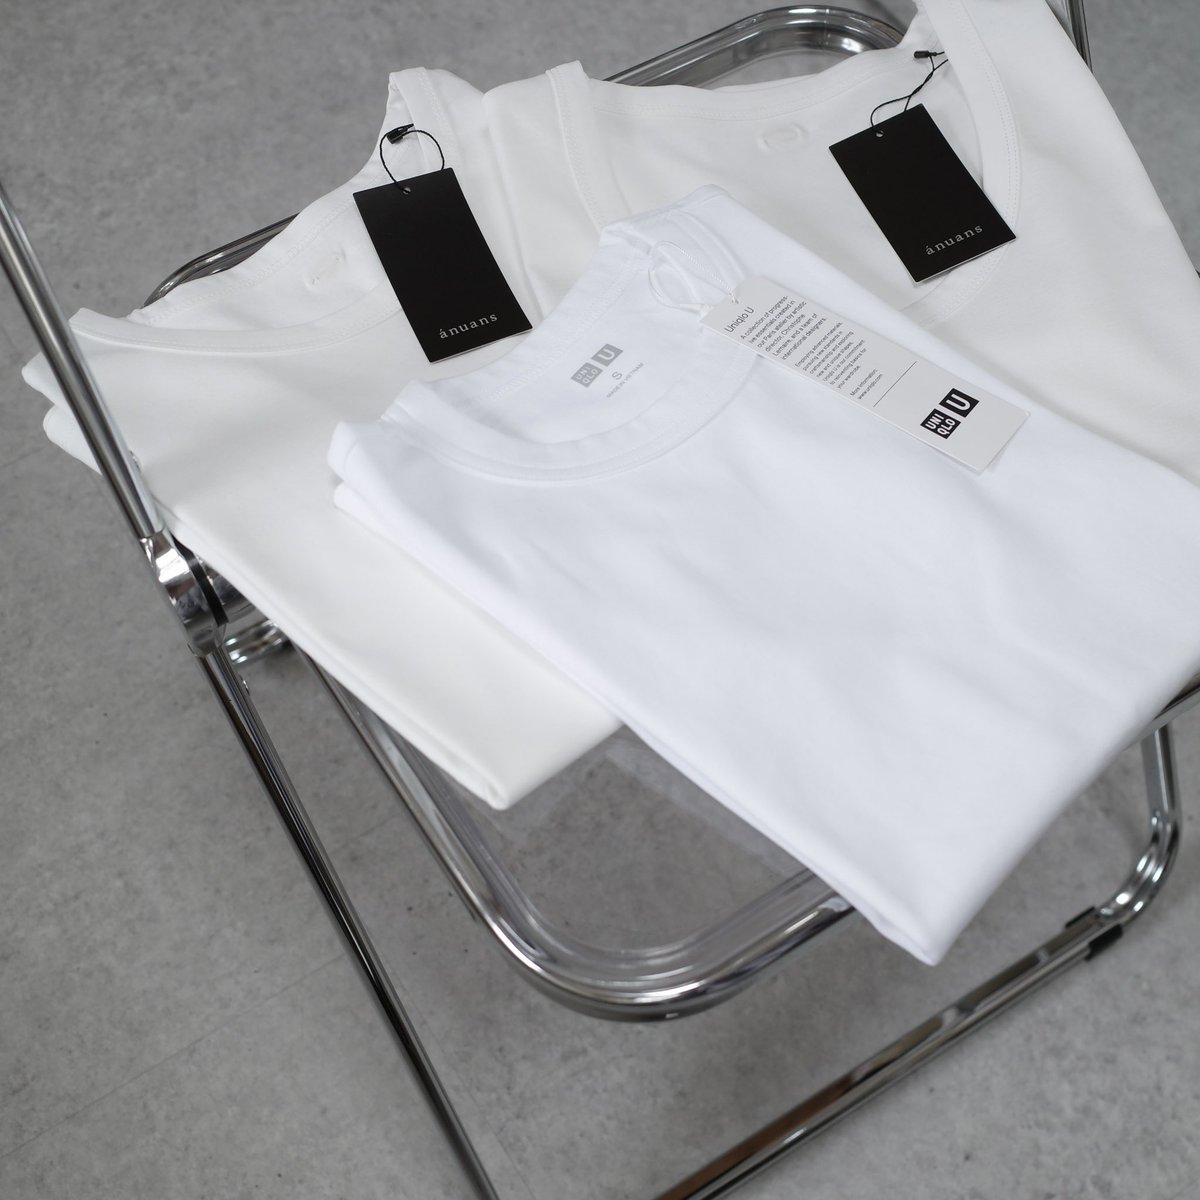 素材やシルエットで雰囲気が変わる白Tシャツ
今年はまず【UNIQLO・anuans・MIESROHE】の3ブランドを購入🛒🤍
各Tシャツの着画は近日中にアップ予定です🤳🏻